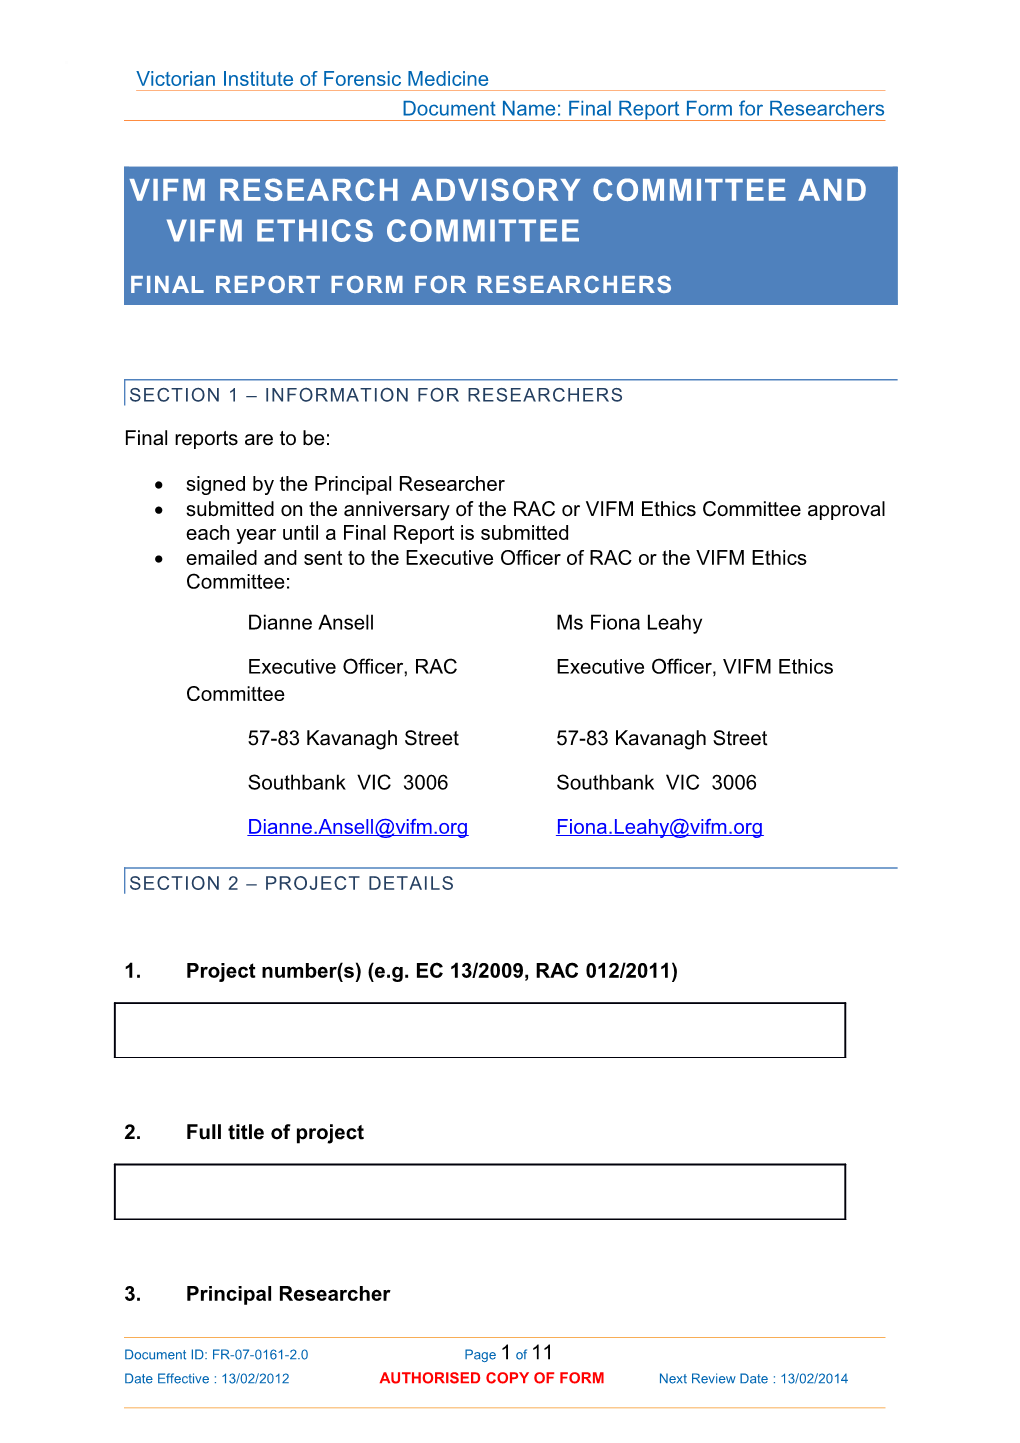 VIFM Information Document - Portrait Template